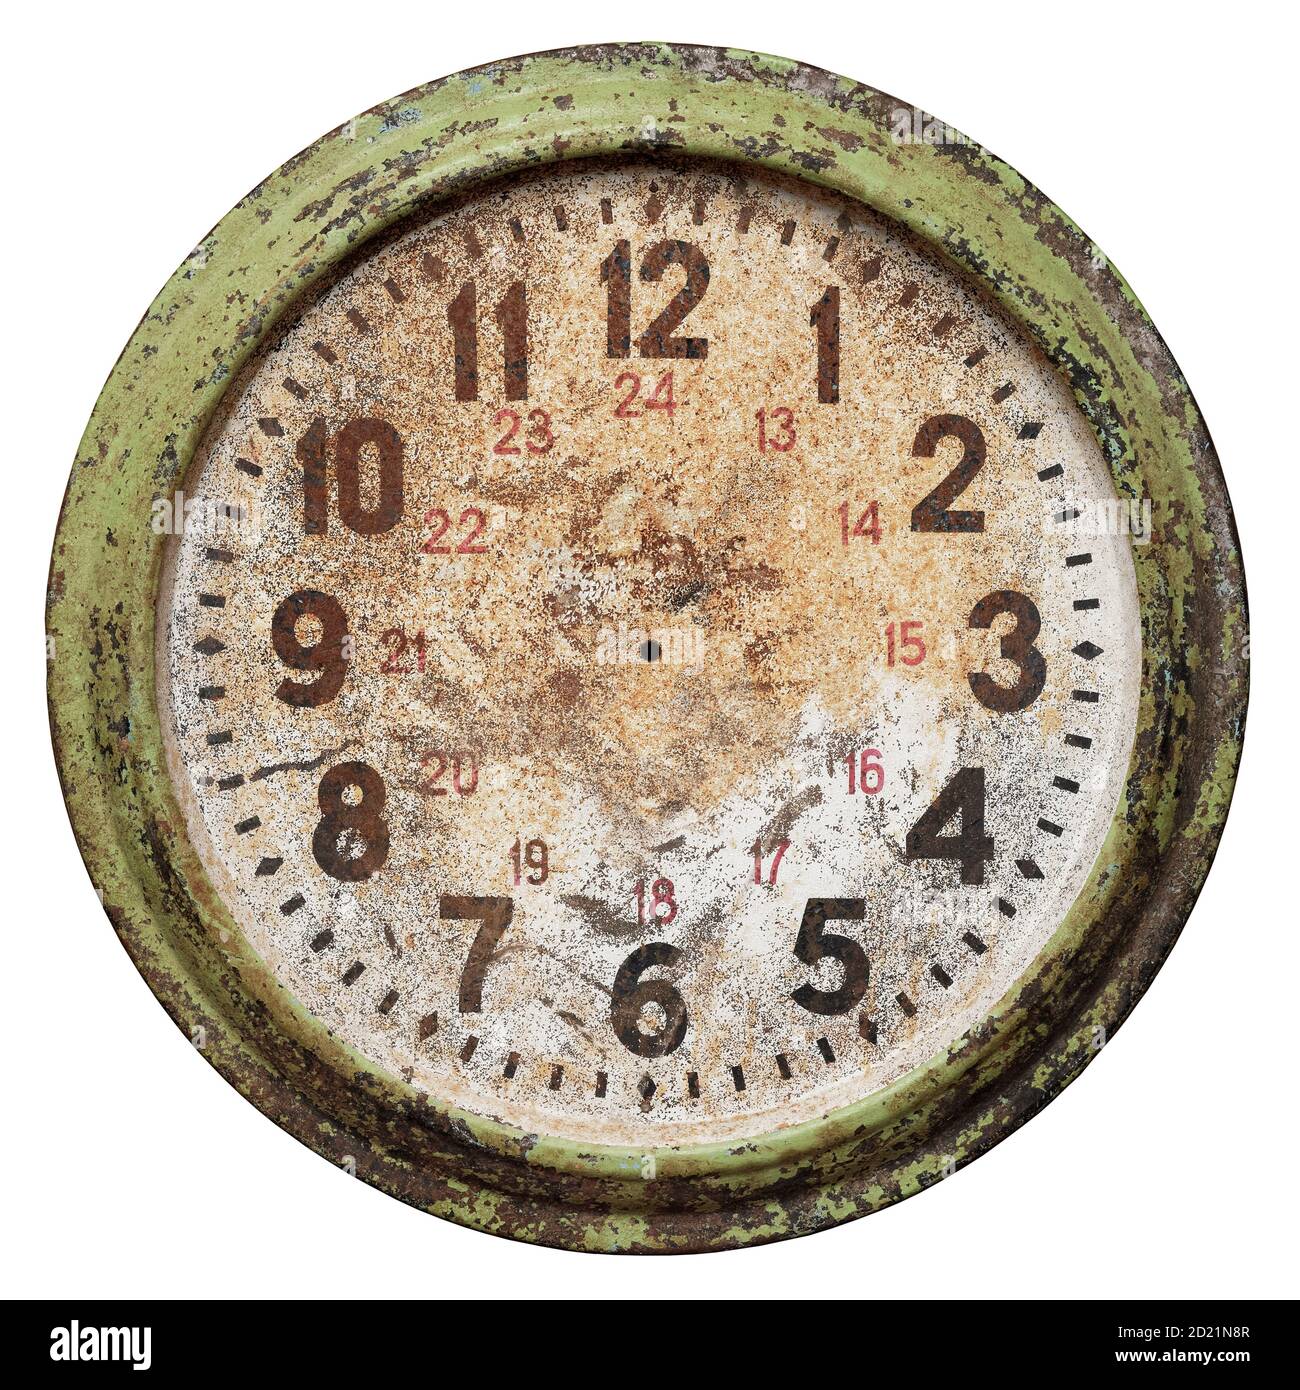 Très vieux cadran rond d'horloge murale sans les mains, isolé sur fond blanc Banque D'Images